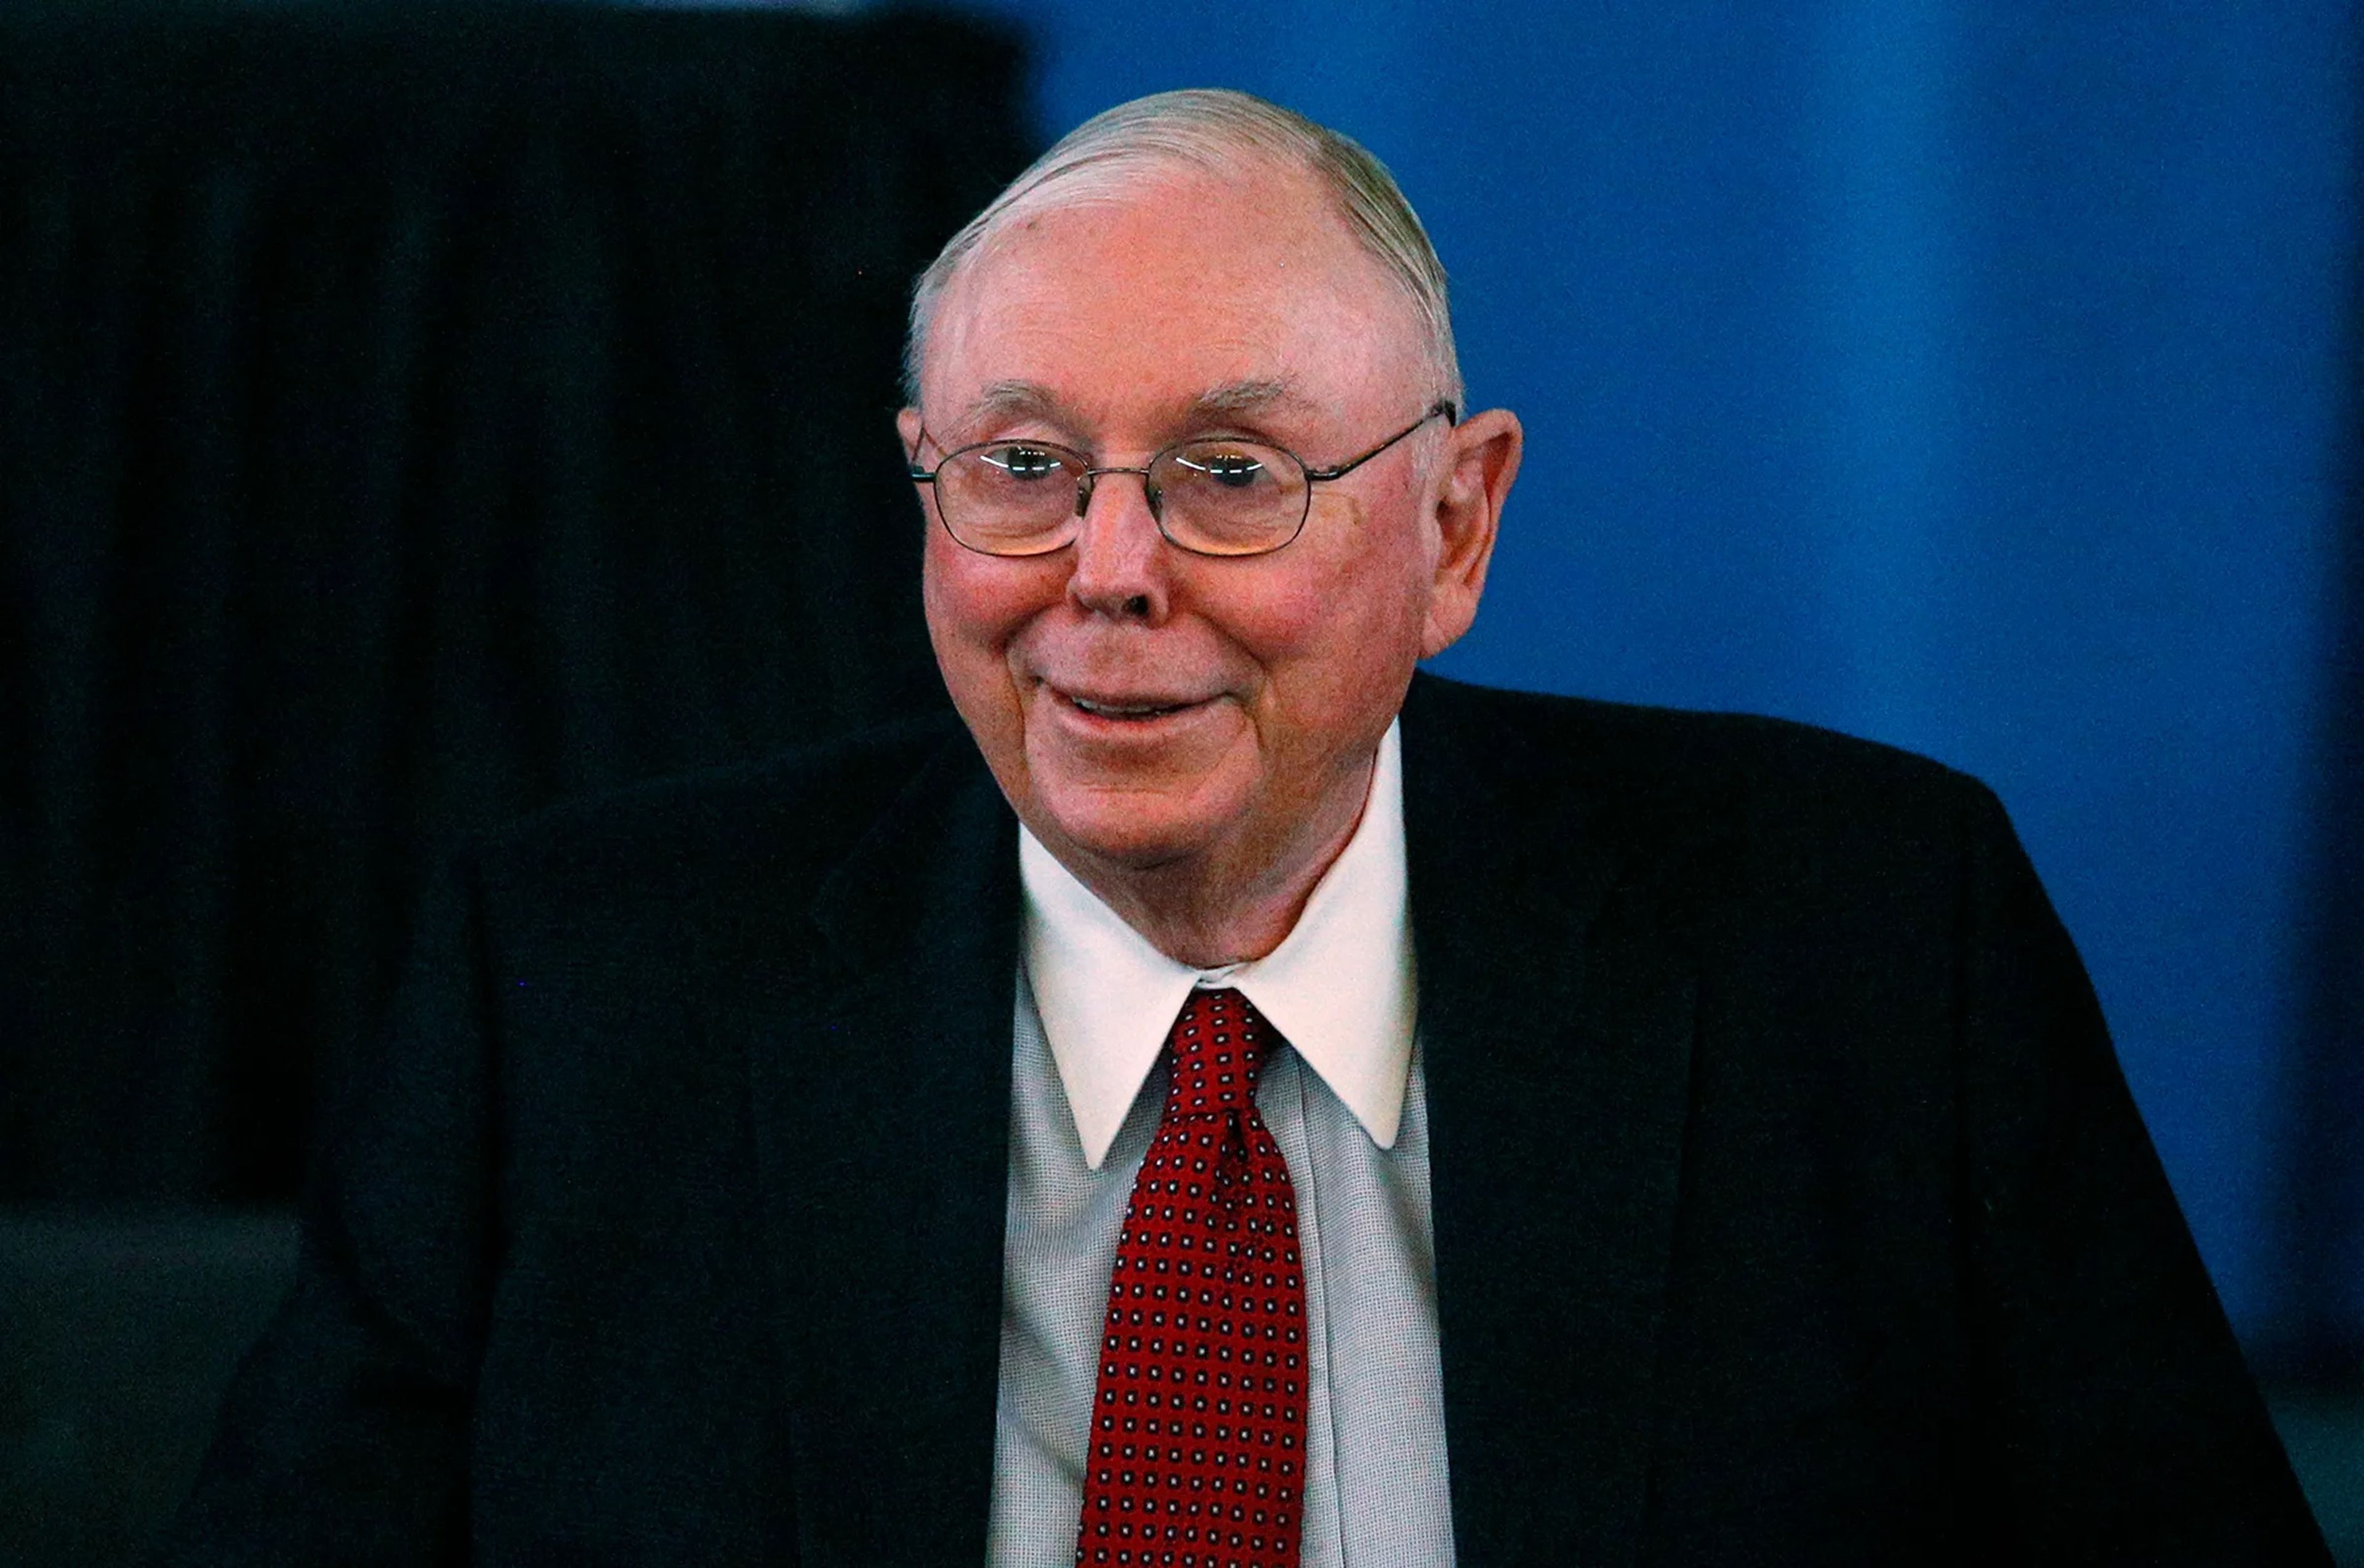 Charlie Munger, vicepresidente de Berkshire Hathaway y número dos de Warren Buffett, ha muerto a los 99 años.